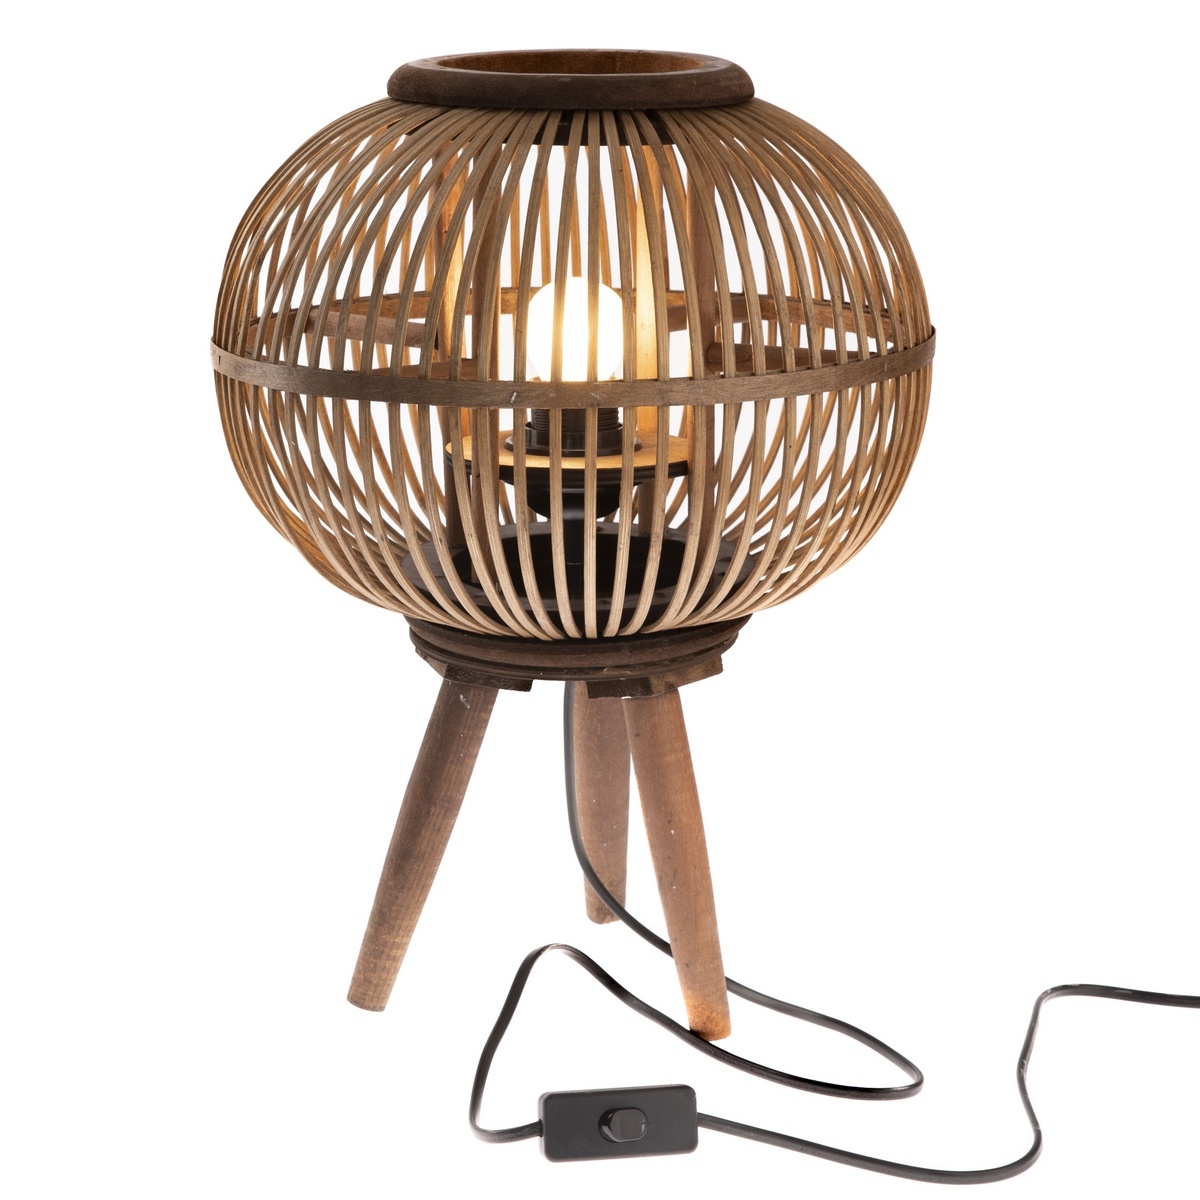 Dekorativní bambusová lampa Almansa